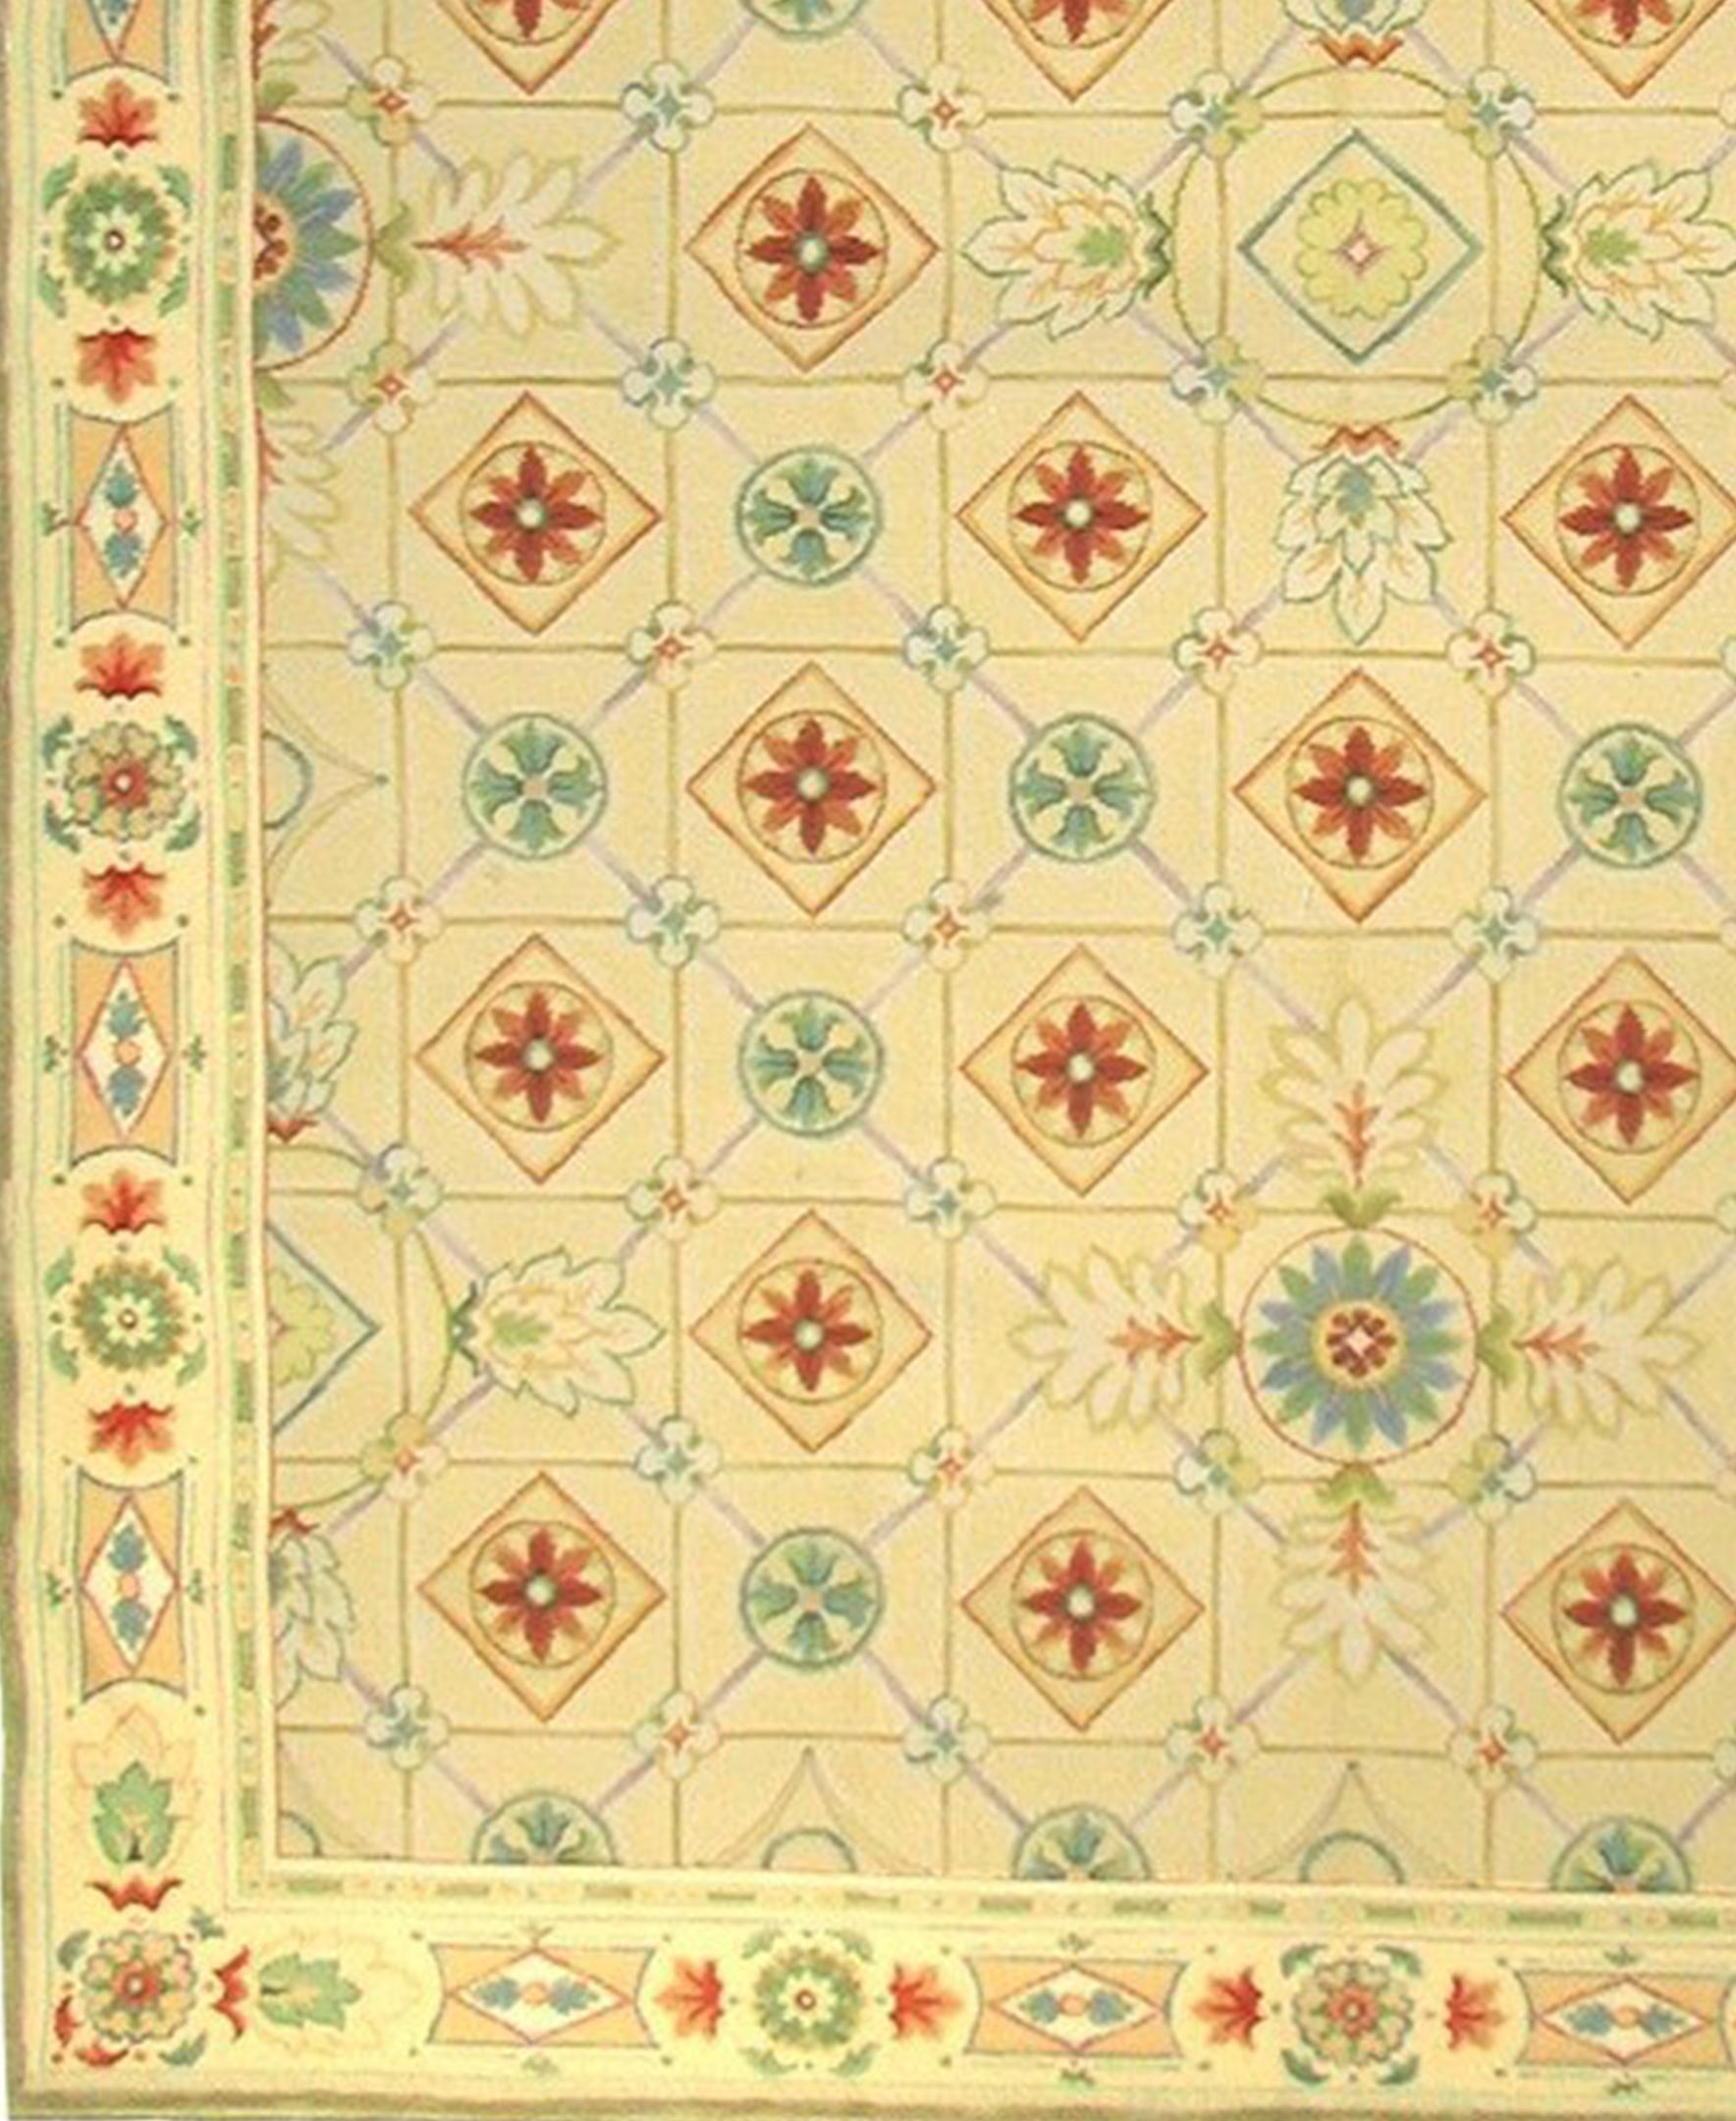 Jaune, rouge, orange, sarcelle, aqua, vert, lilas dans un motif géométrique Empire français basé sur une peinture originale d'Asmara par Elizabeth Moisan. Ce tapis à poils coupés et bouclés a été fabriqué à la main en combinant un tissage bouclé